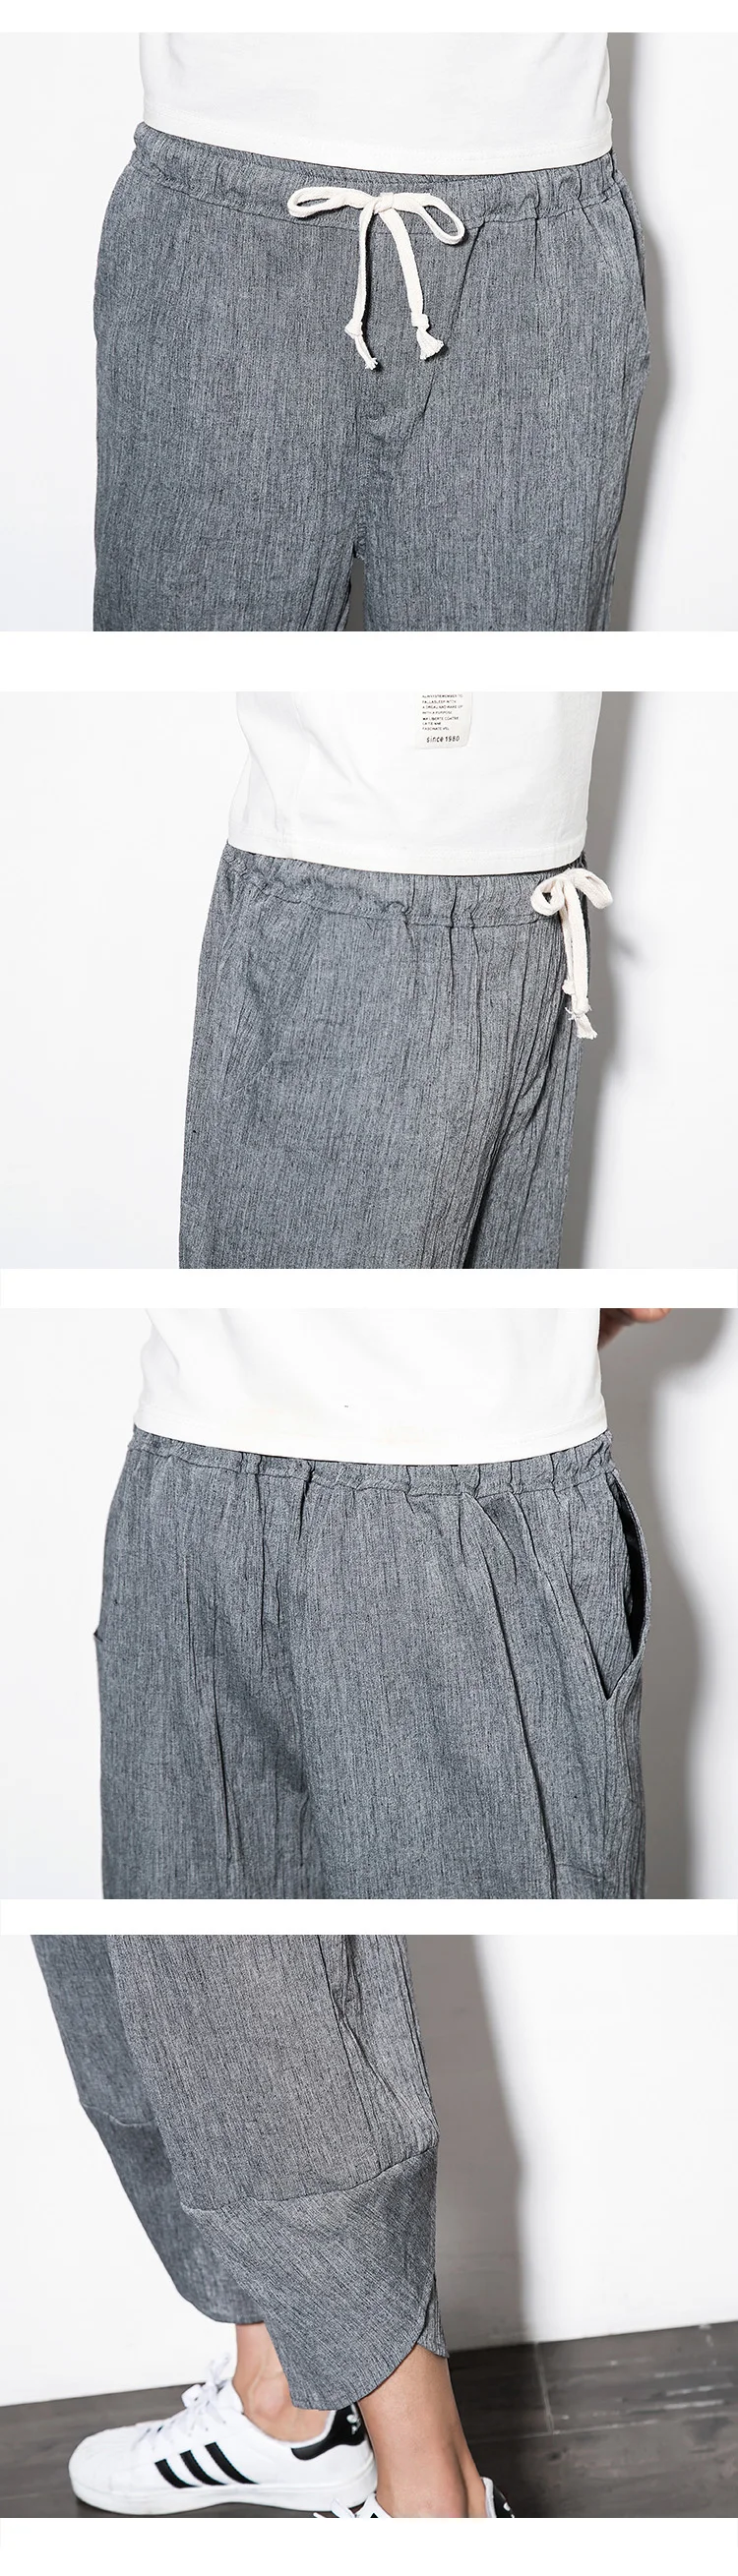 Китайский стиль Летние Пляжные штаны однотонные узкие формы darwstring брюки мужчины белье Штаны Мужской Свободные укороченные Штaны-клёш